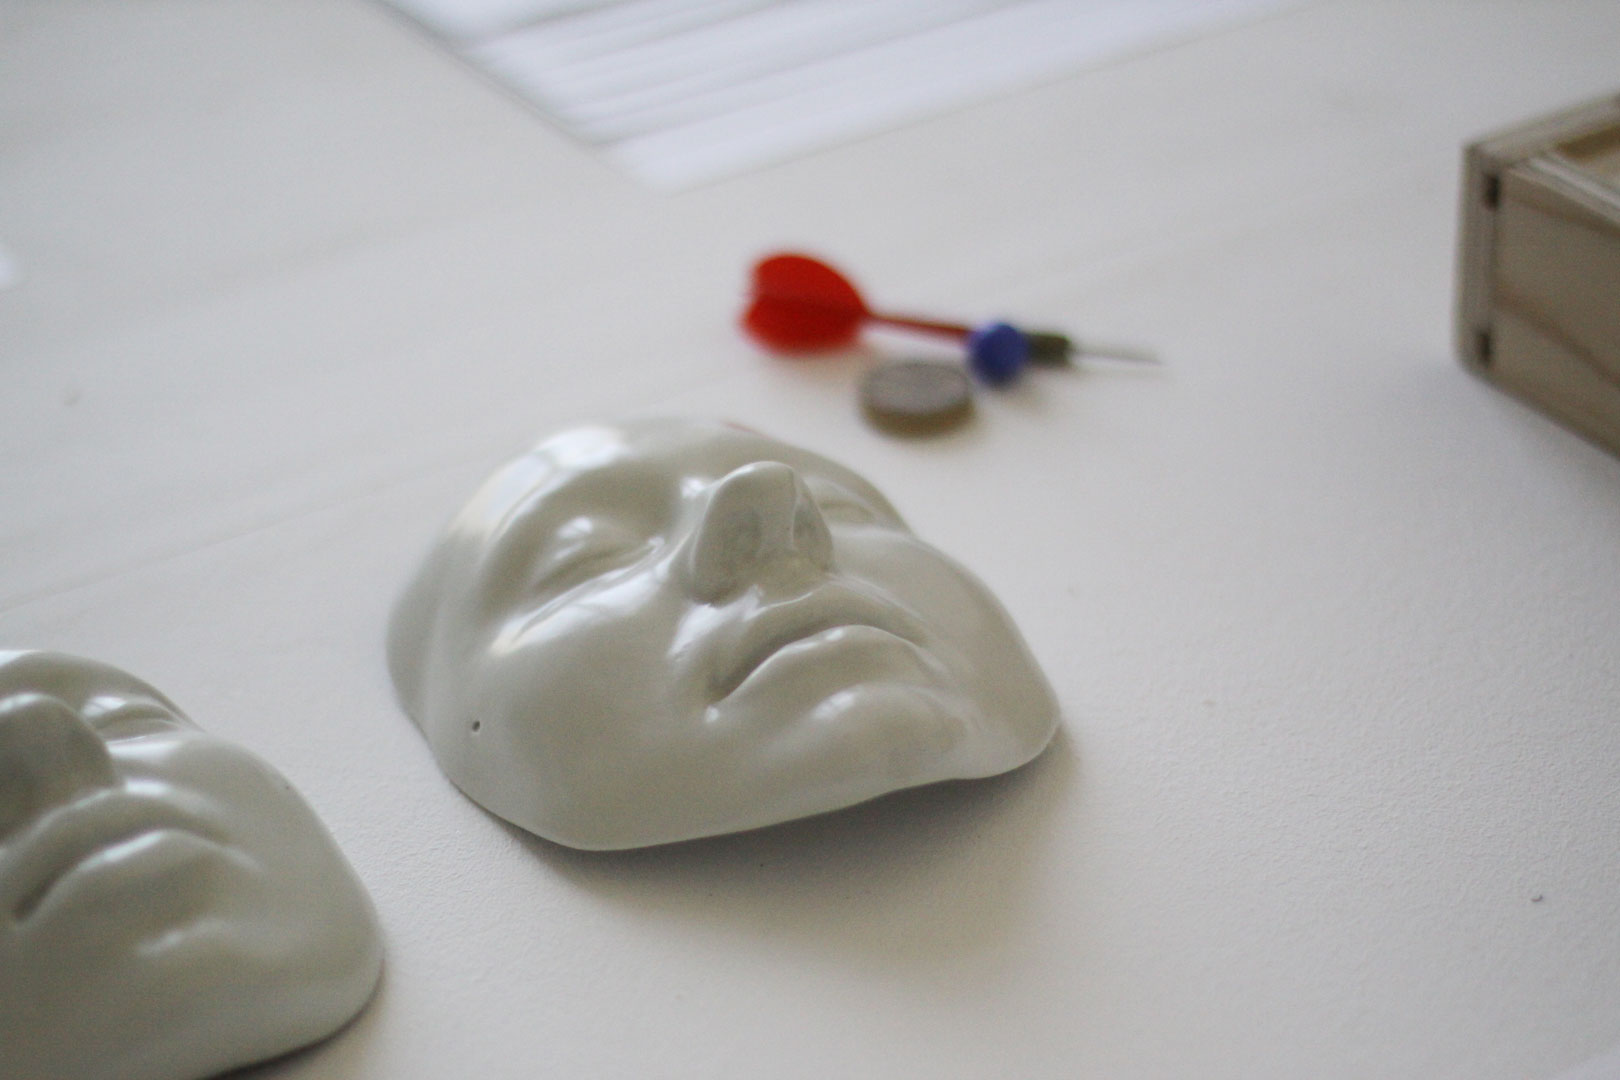 Détails sur les masque en porcelaines présenté dans l'installation intitulée "Mouvement perpétuel". Les masque sont en porcelaine émaillée, brillante, blanchâtre.